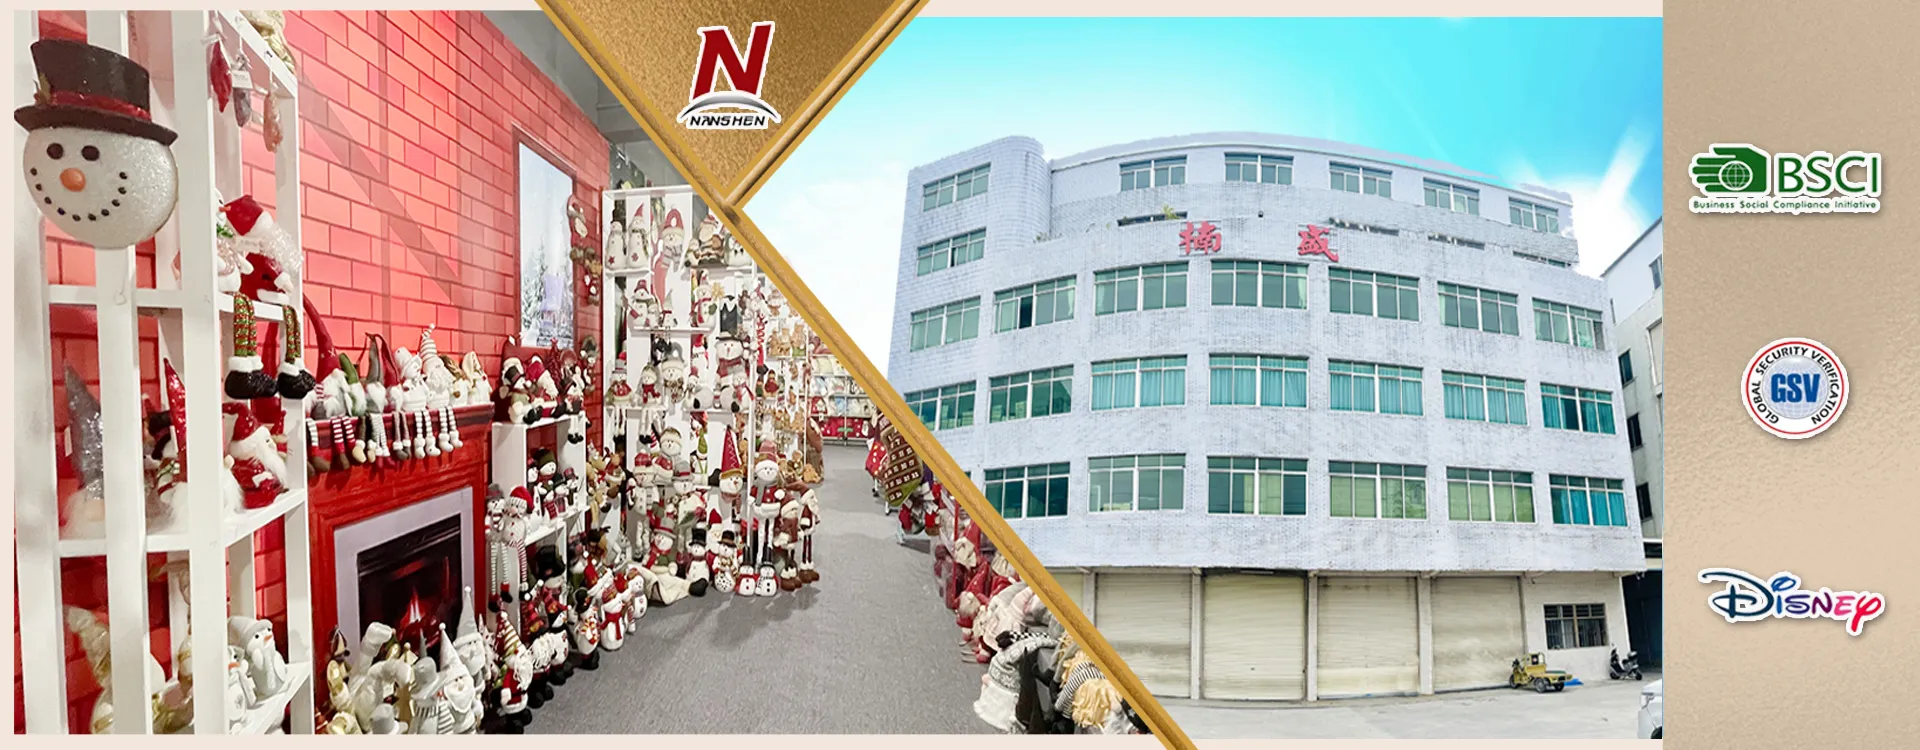 Nanshen Handwerksindustrie Co., Ltd.